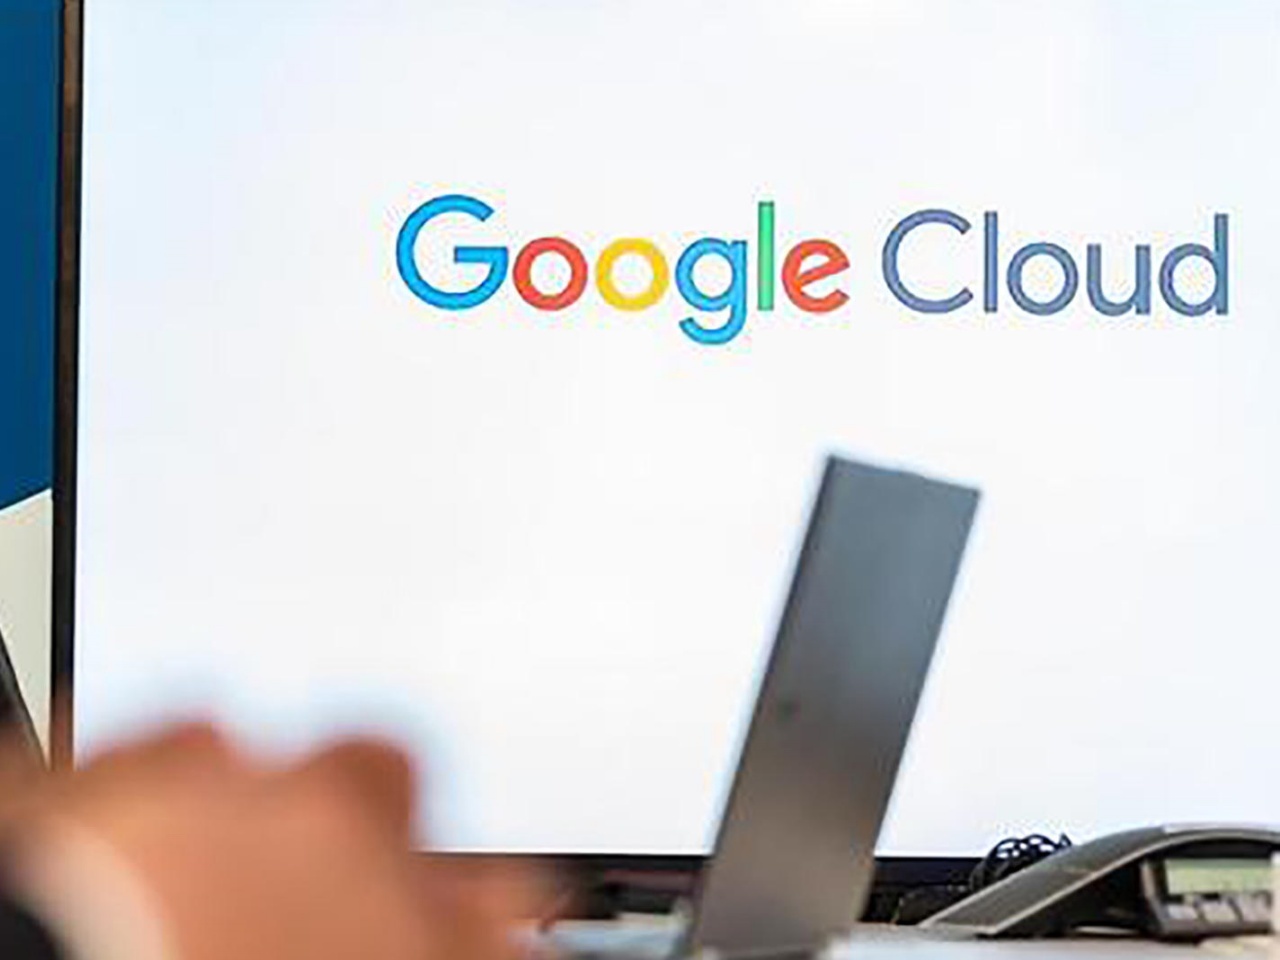 Google Cloud、ミッションクリティカルなワークロード向けの新サポートオプション